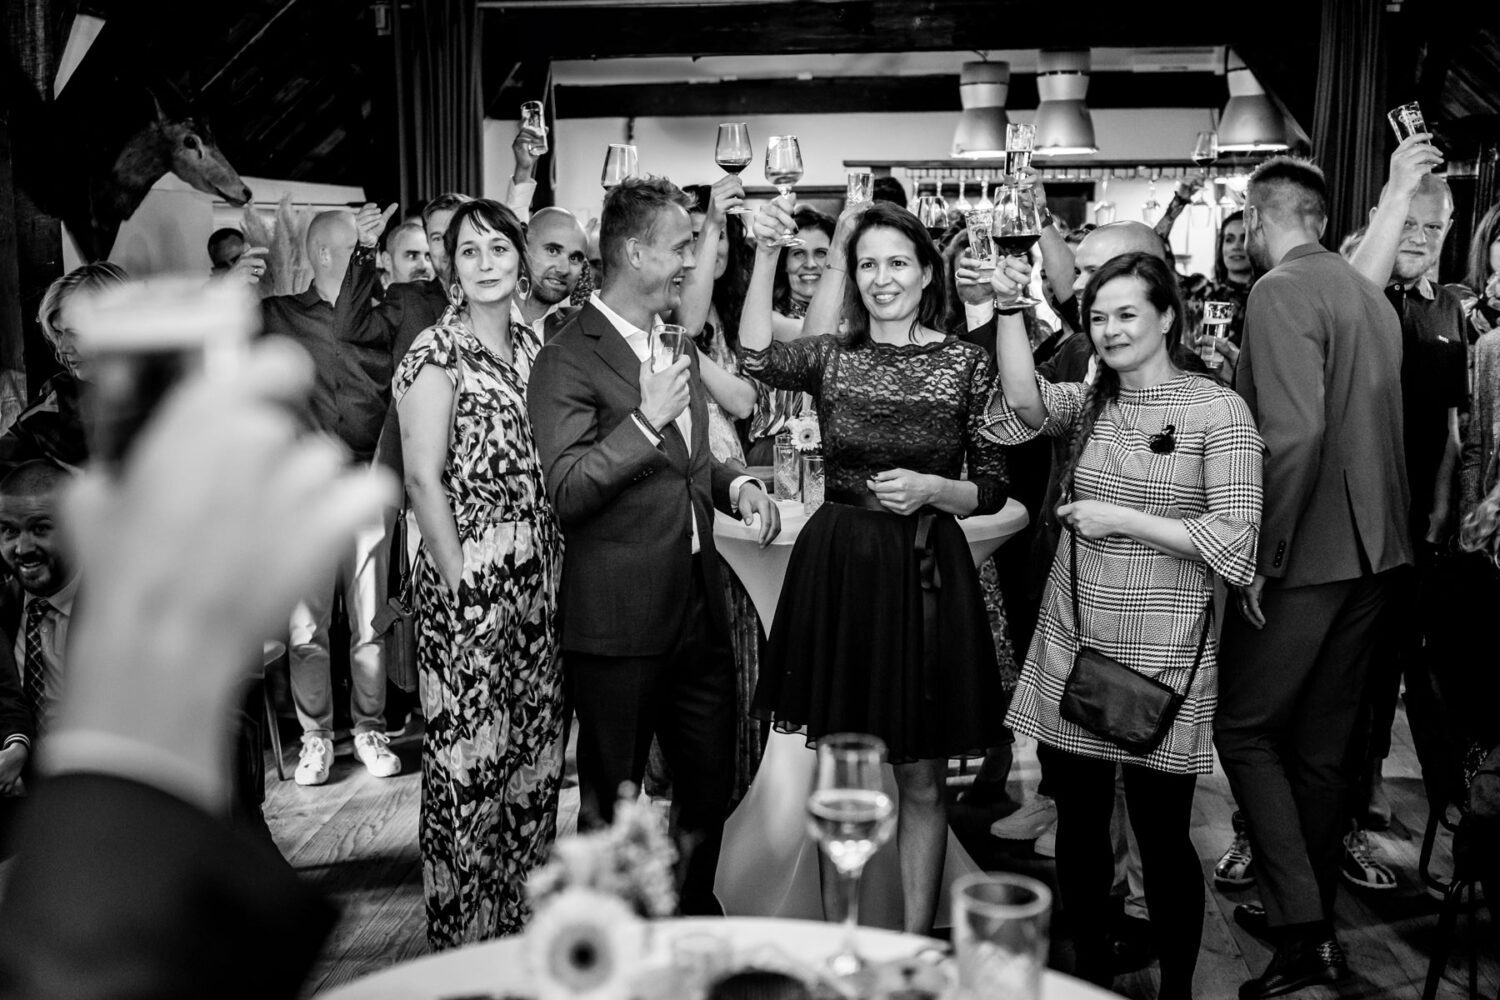 Brasserie schovenhorst trouwceremonie in het bos journalistieke trouwfotograaf landgoed schovenhorst